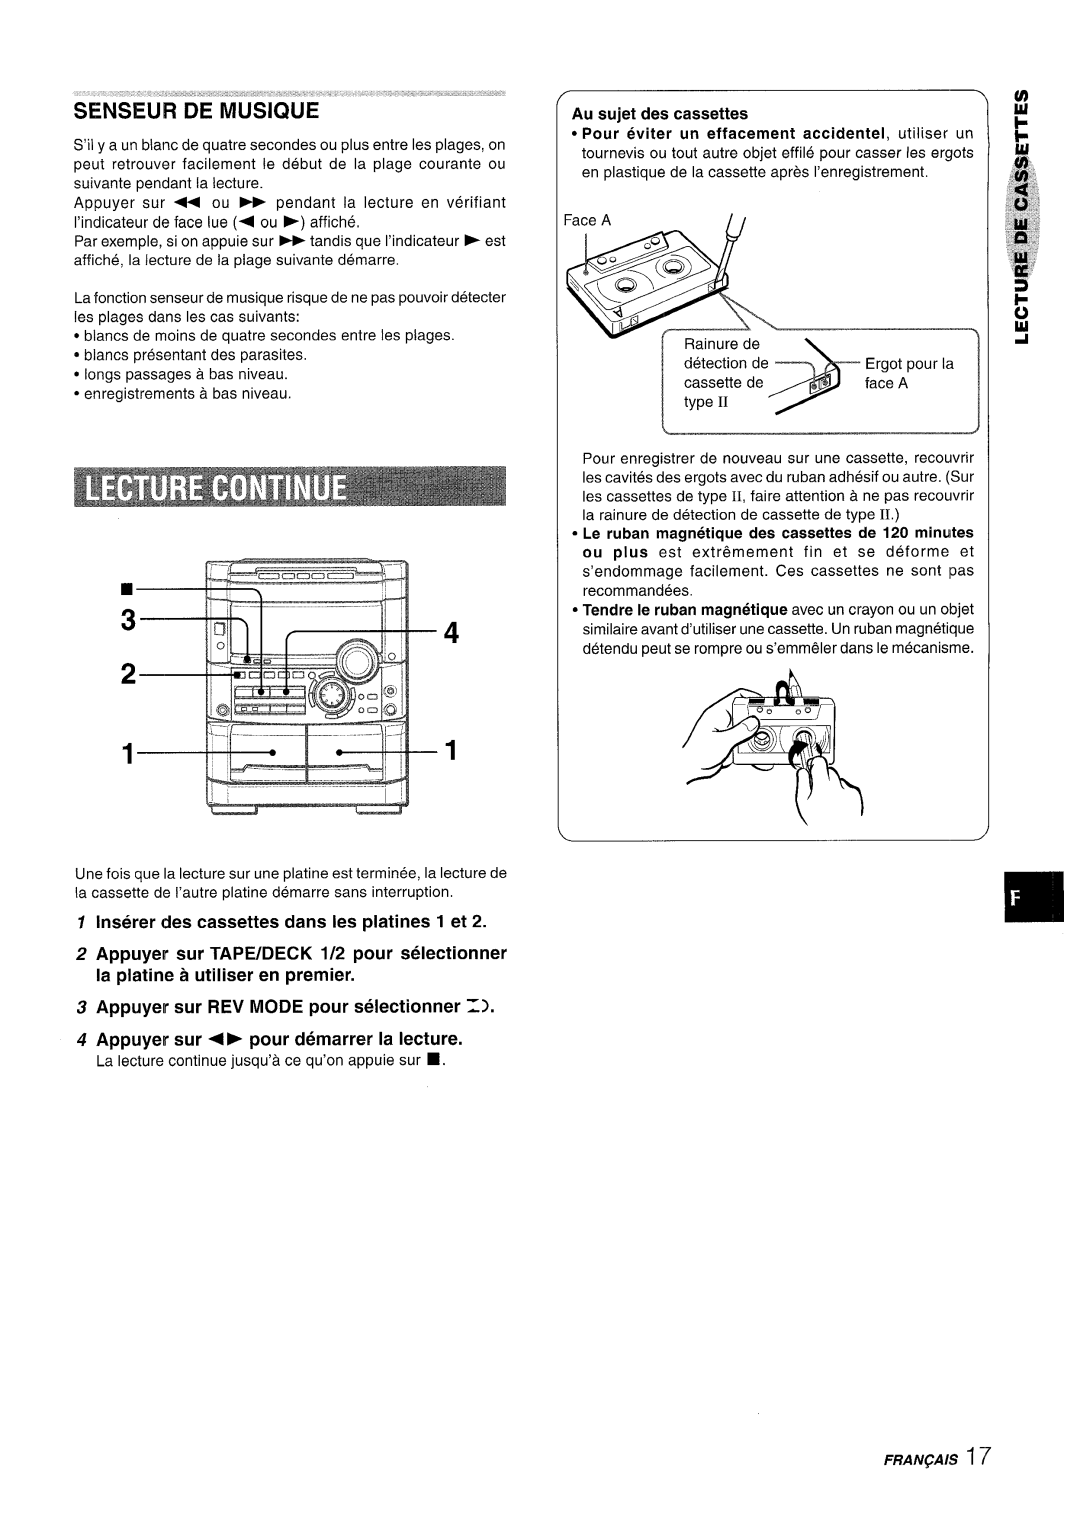 Sony NSX-A767 manual Inserer cles cassettes clans Ies platines 1 et, Appuyer sur REV MODE pour selectionner Z 